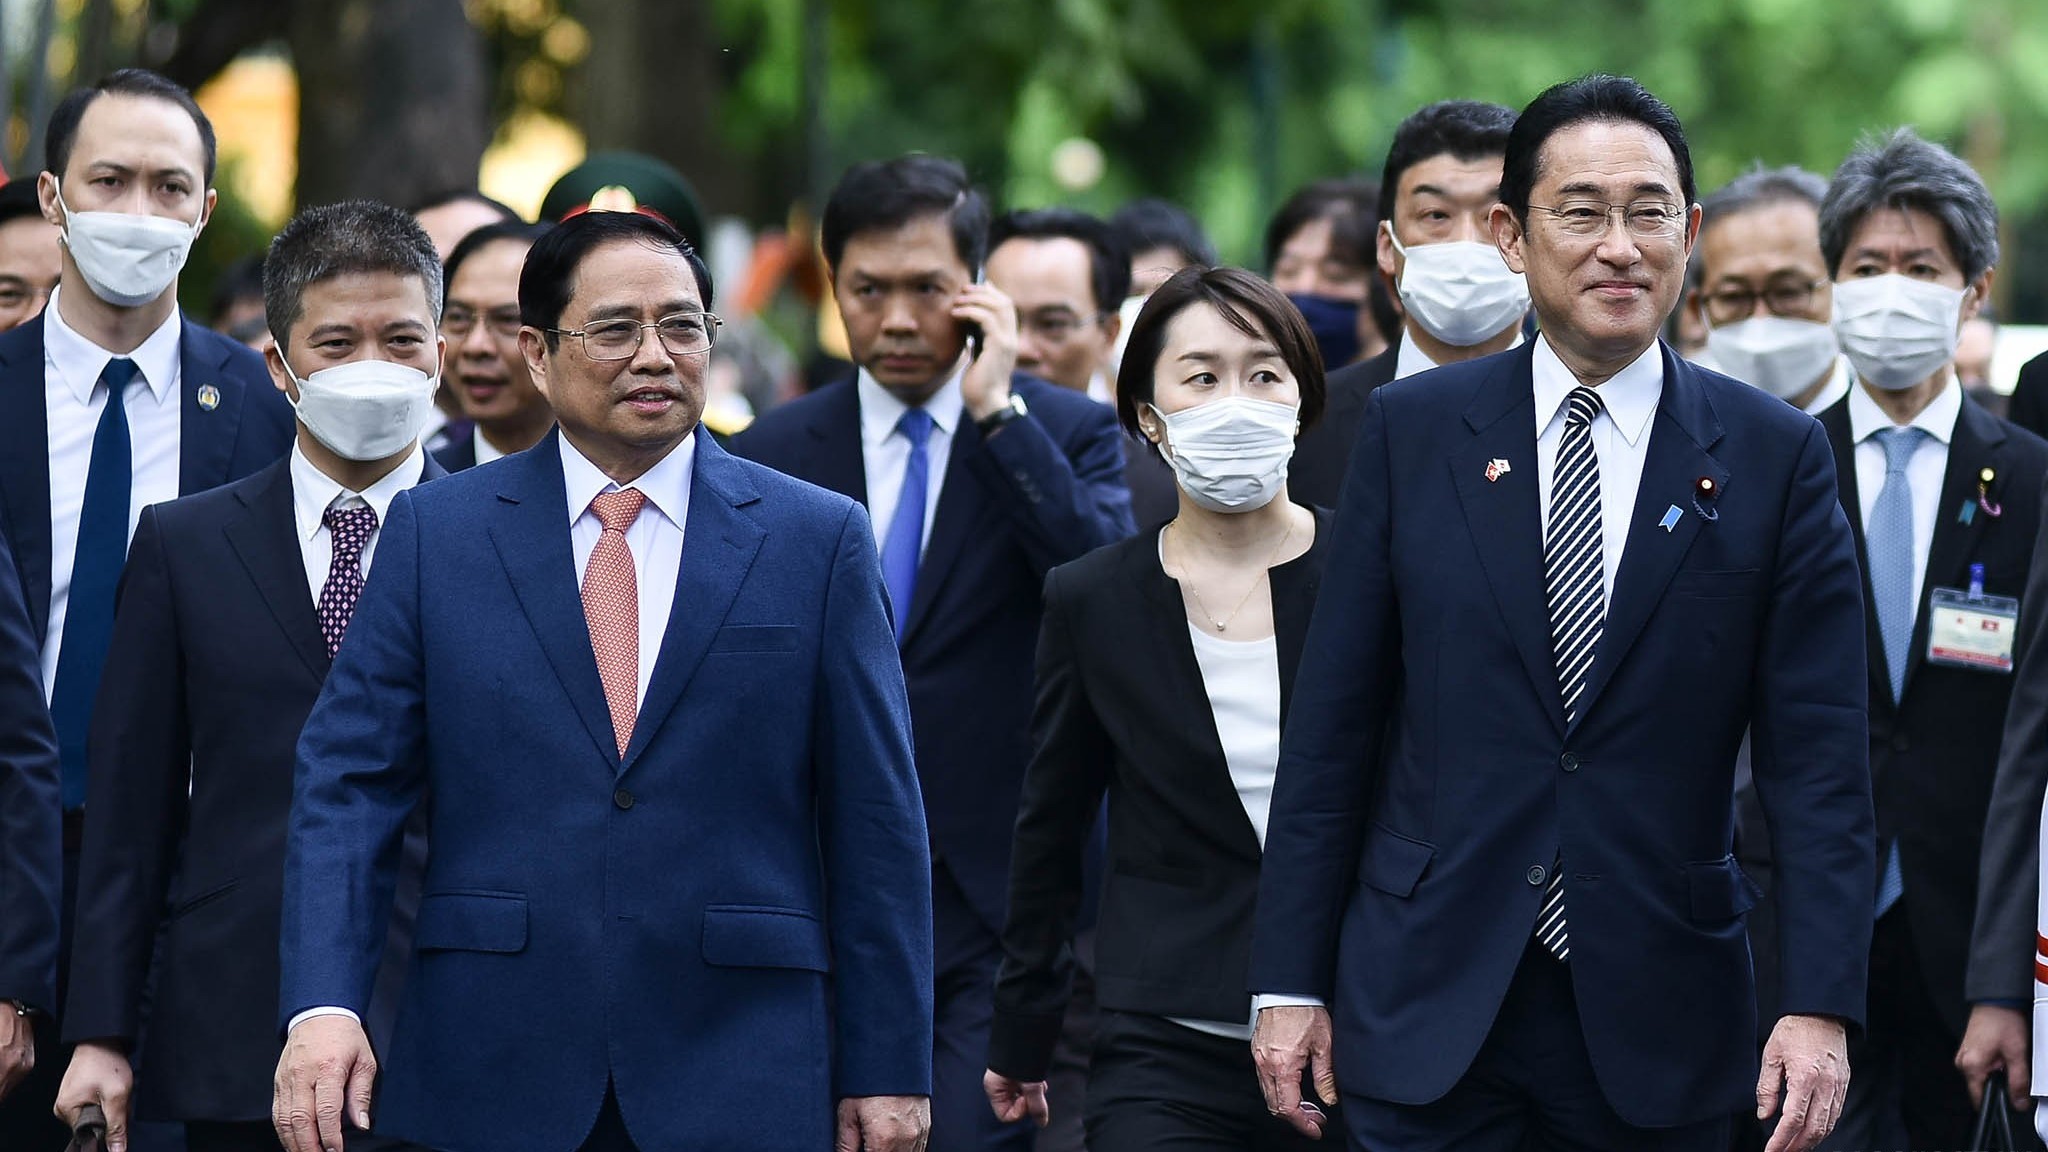 Báo chí quốc tế đưa tin đậm nét về chuyến công du của Thủ tướng Nhật Bản Kishida Fumio tới Việt Nam